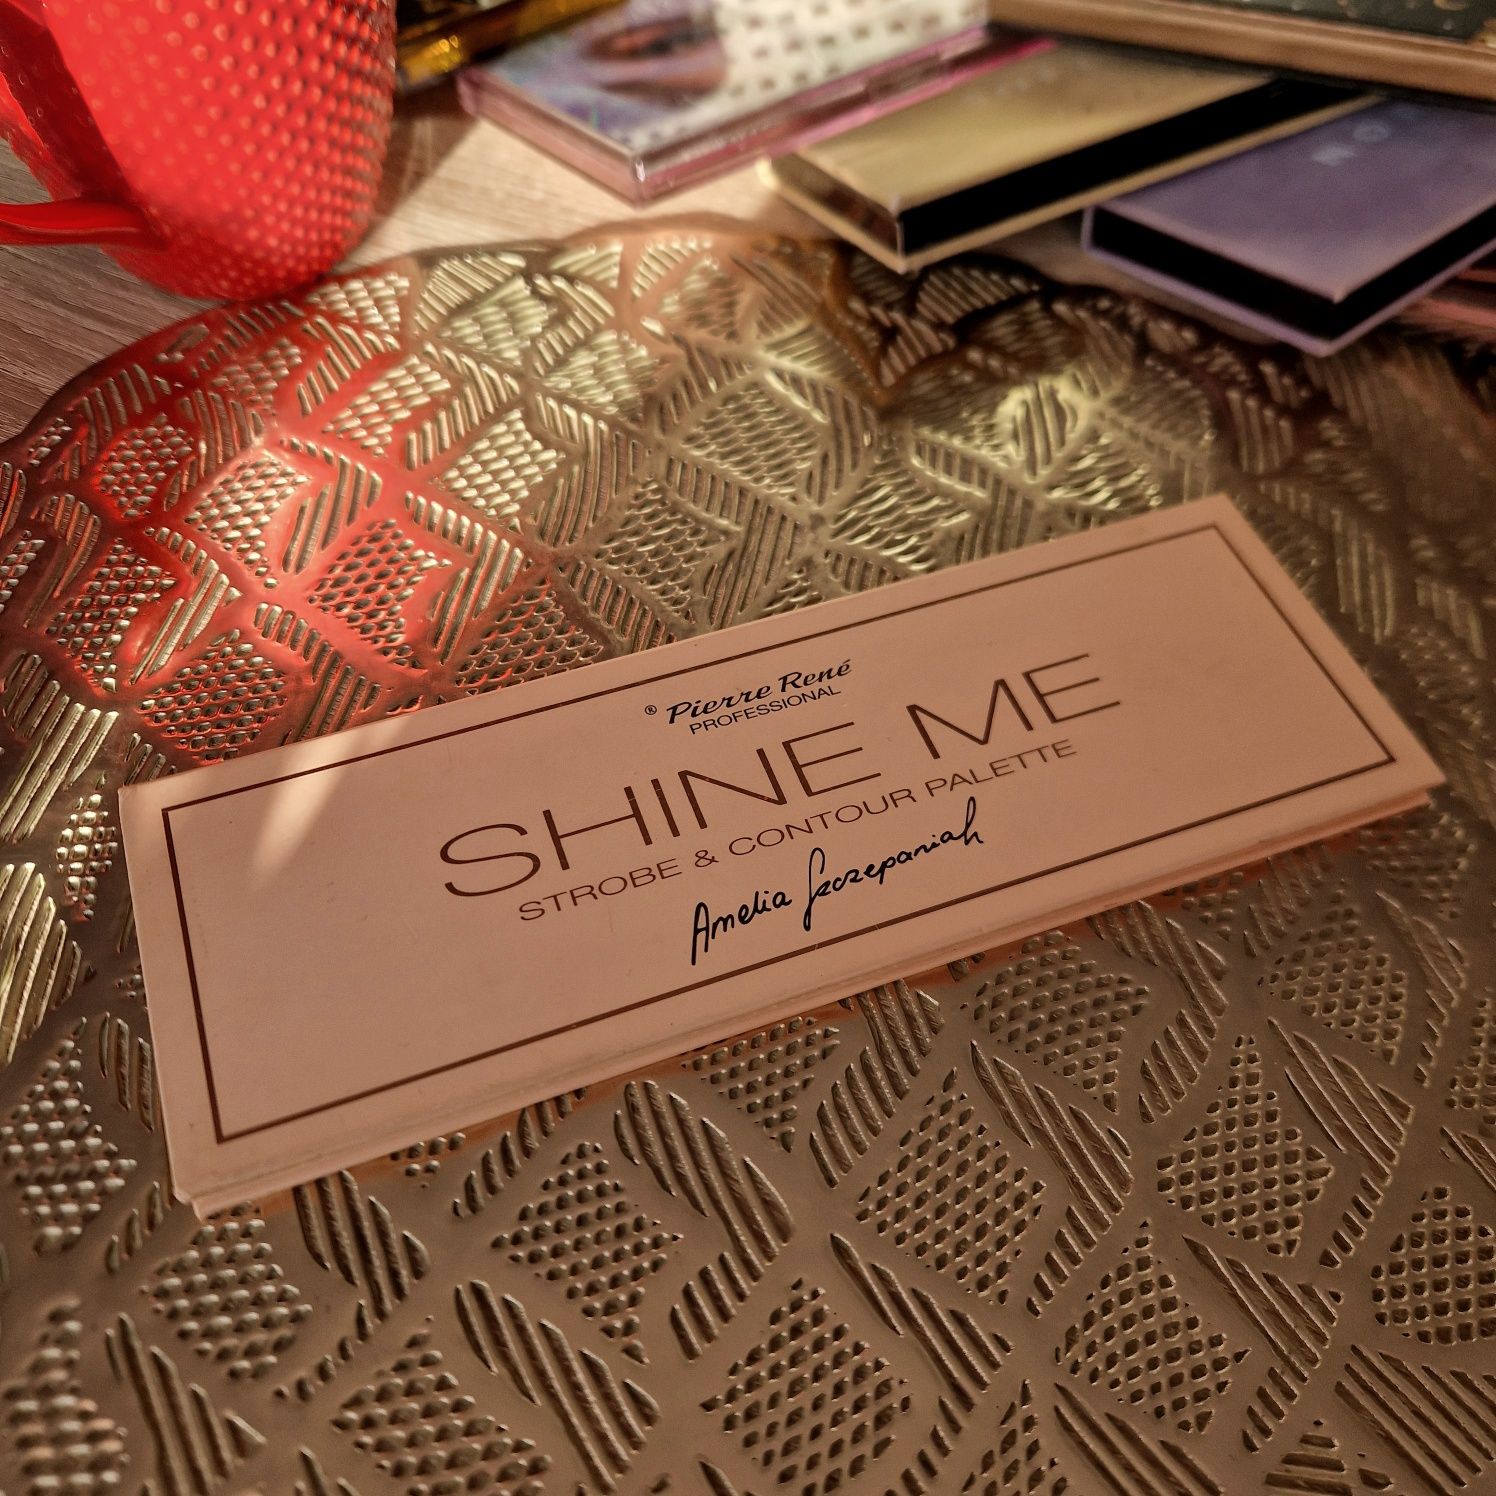 Pierre Rene, By Amelia Szczepaniak, Shine Me Strobe & Contour Palette